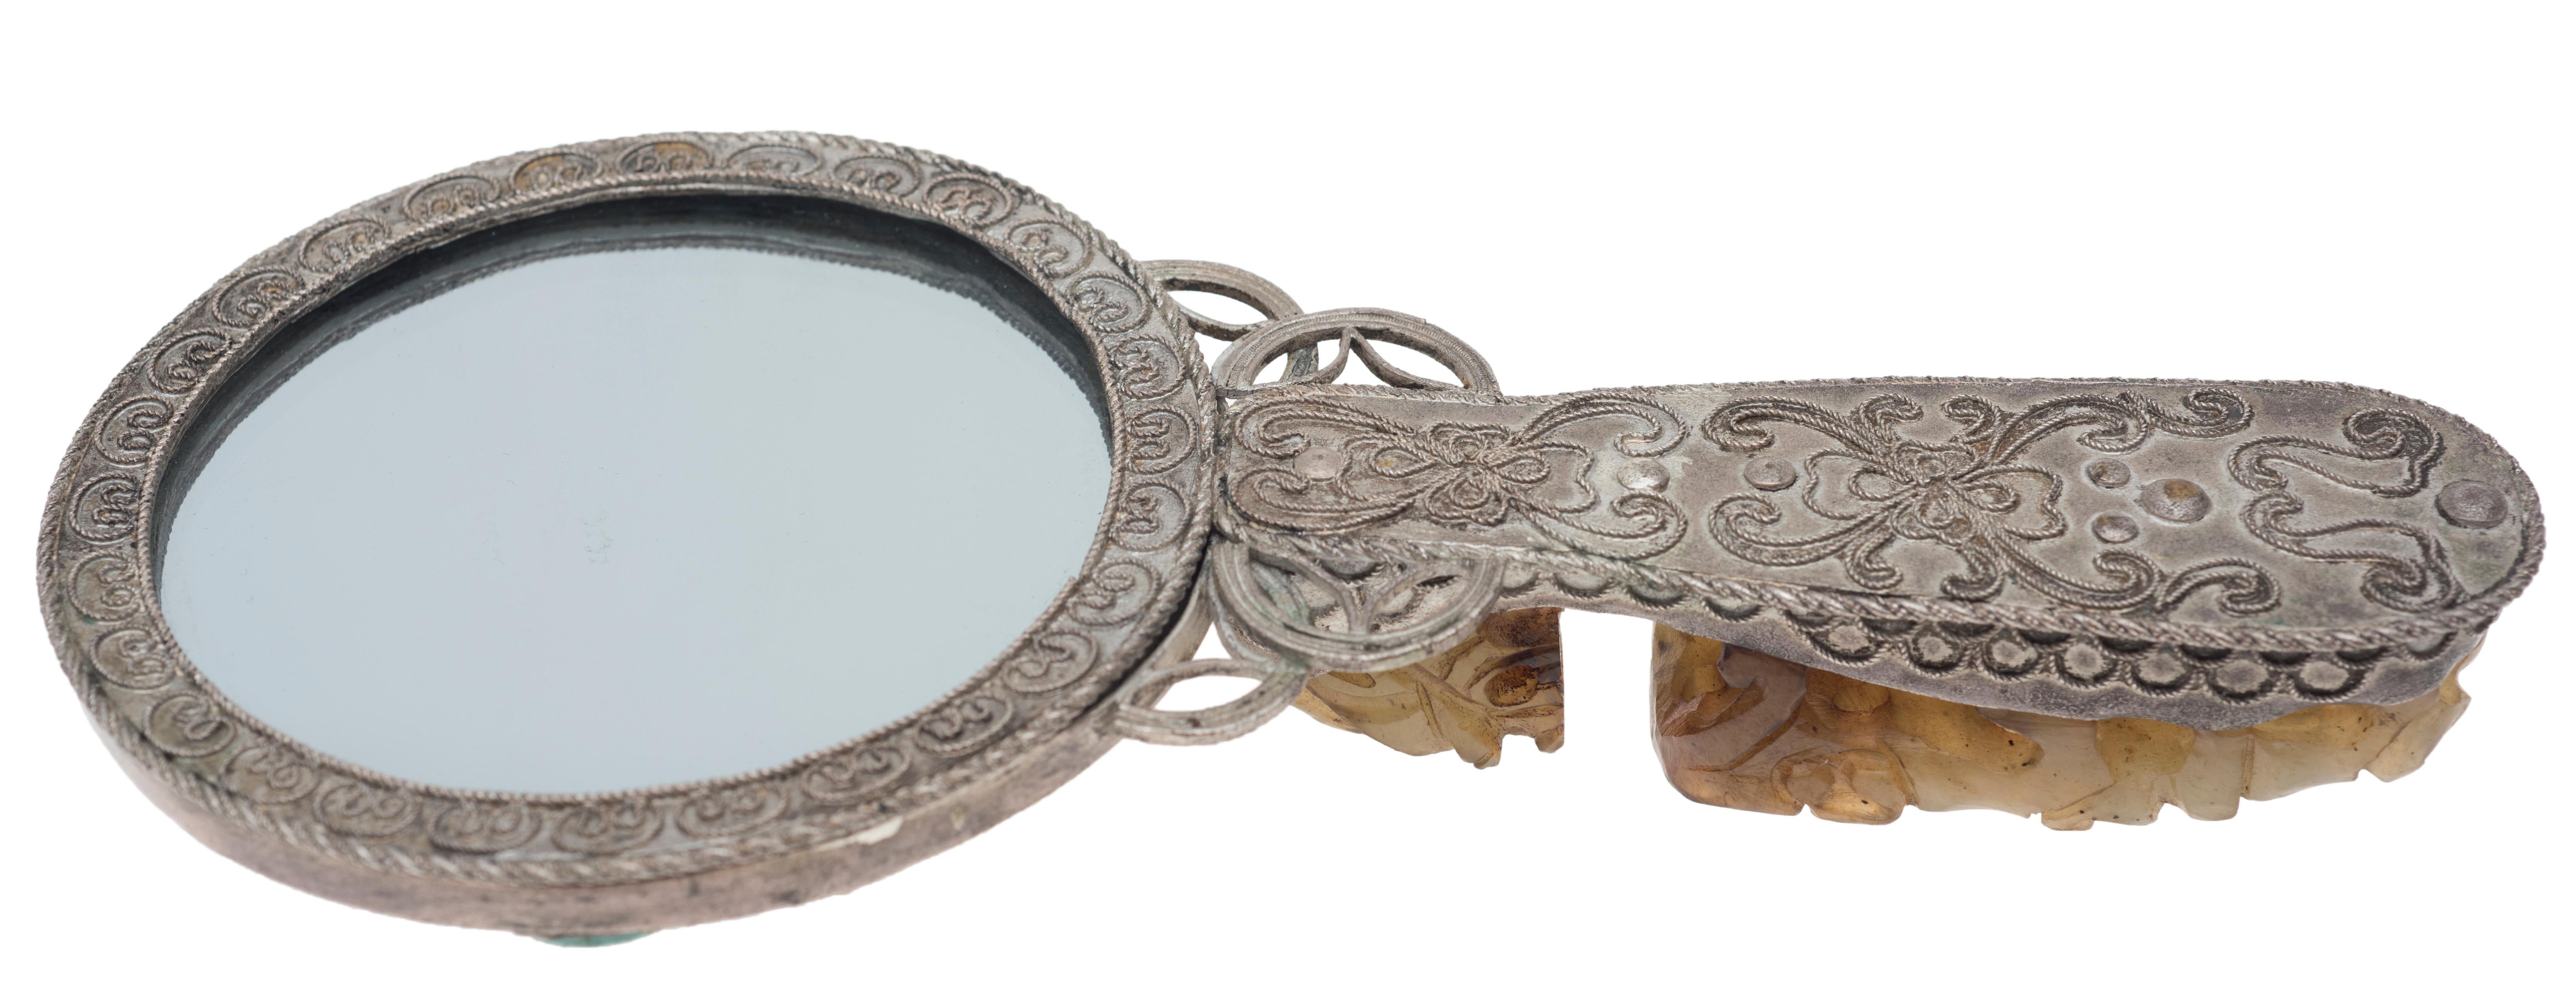 Vieux miroir de toilette en argent décoré avec des inclusions en jade en forme de dragons. Chine, début du 20e siècle.

Cet objet est expédié d'Italie. Selon la législation en vigueur, tout objet se trouvant en Italie et créé il y a plus de 70 ans